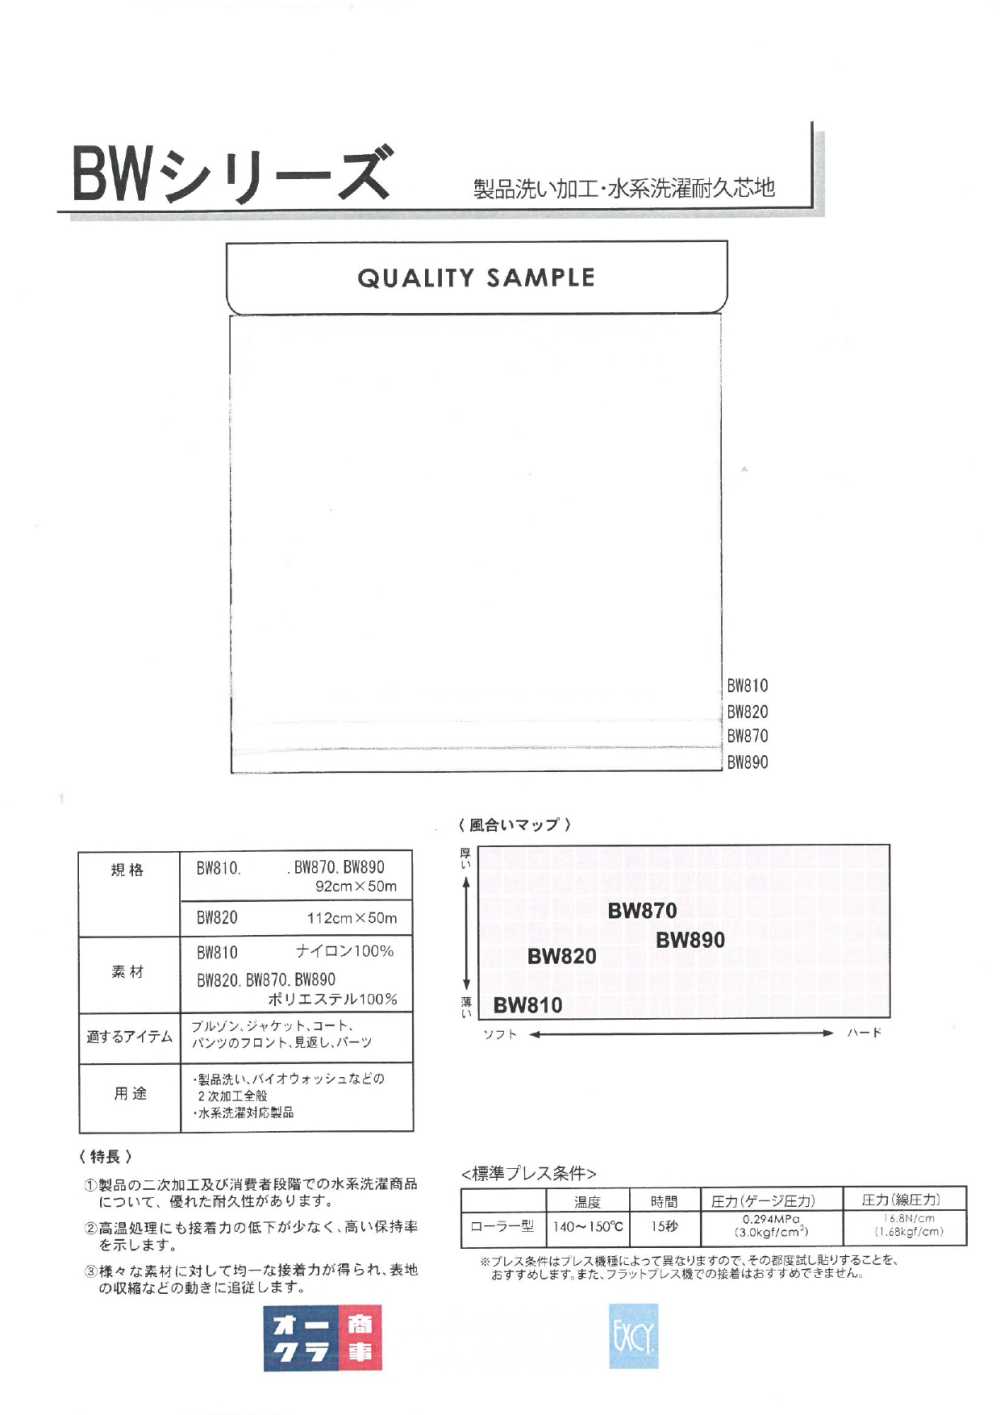 BW870 제품세척 가공・수계 세탁 내구심지(30D) 닛토보 (닛토보인터라이닝)